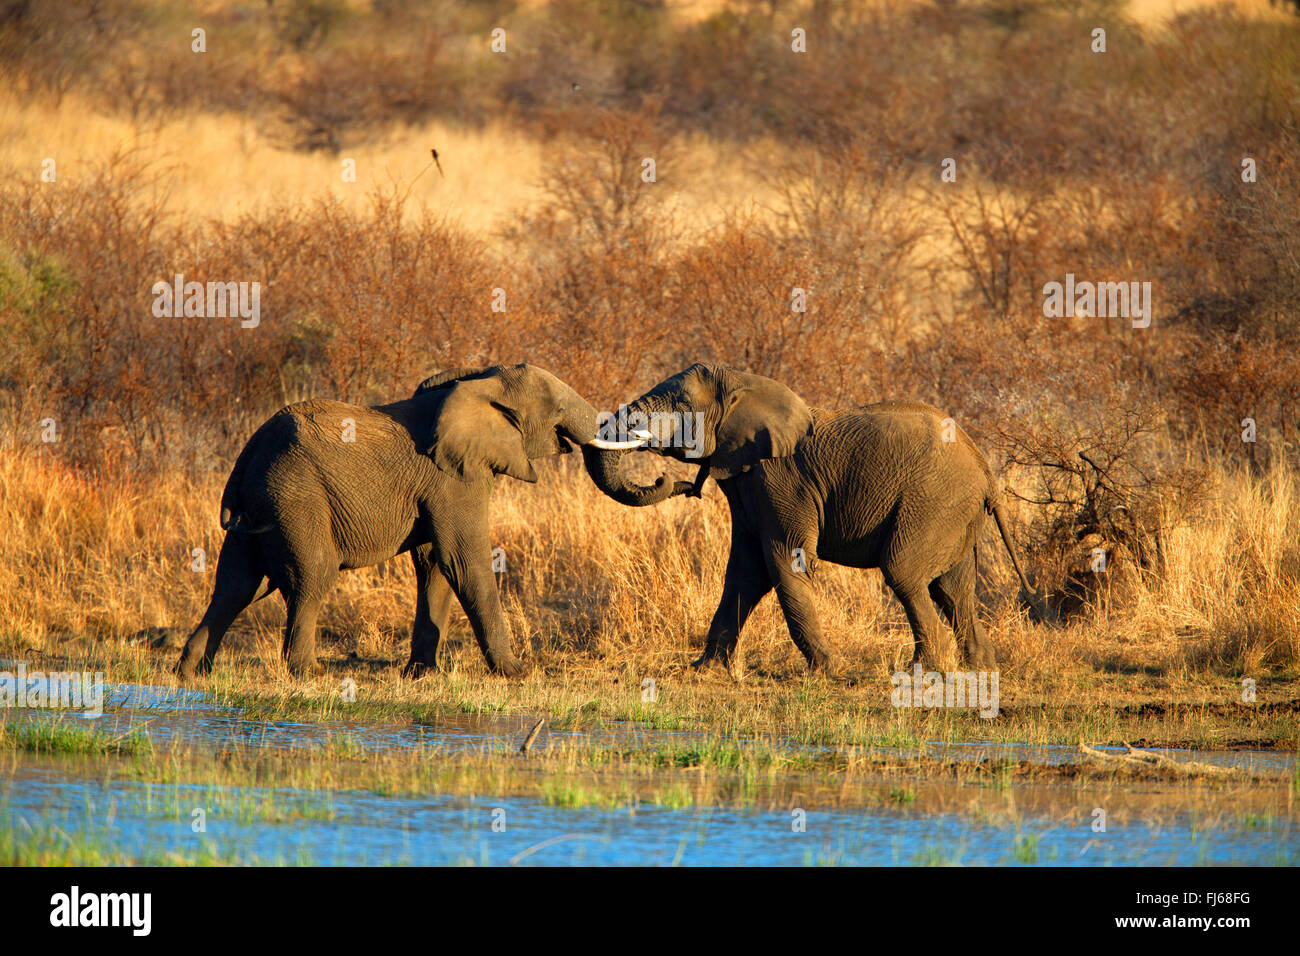 Afrikanischer Elefant (Loxodonta Africana), zwei Jungtiere spielen an einem Wasser legen, Südafrika, North West Province, Pilanesberg Nationalpark Stockfoto